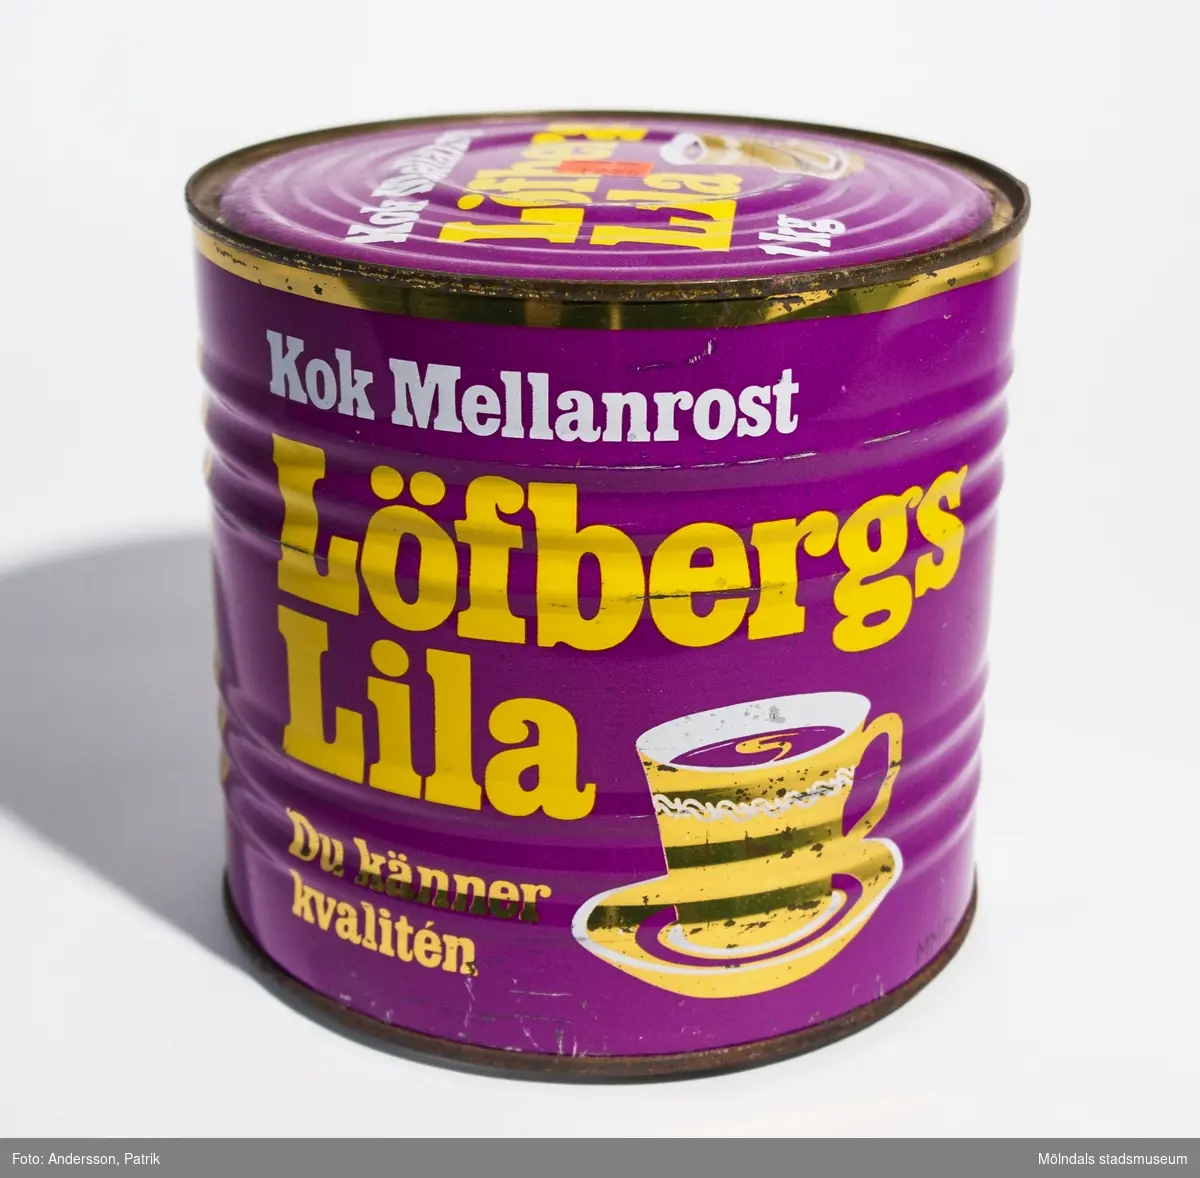 Plåtburk som innehåller 1 kg Löfbergs Lila Mellanrost Kokkaffe, tillverkat av AB Anders Löfberg Kafferosteri i Karlstad. Troligtvis tillverkad i slutet av 1970-talet eller i början 80-talet. Burken är oöppnad. Man måste använda konservöppnare för att öppna den.

Burken är lila. På burken finns texten: "Kok Mellanrost Löfbergs Lila Du känner kvalitén", tryckt i färgerna gult, vitt och guld. Bredvid finns en guldfärgad kaffekopp. Mot guldfärgad bakgrund finns även faktan: 
"1 kg KAFFE VDN FAKTA 
Malning: Kokmalet. (Två malningsgrader förekommer: bryggmalet och kokmalet.)
Rostning: Mellanrost. (Fyra rostningsgrader förekommer: ljus, mellan, mörk och fransk.) 
Vikt: 1 kg netto. 
Förpackning: Högvacuum. 
Hållbarhet: Praktiskt taget obegränsad för oöppnad förpackning (= minst 1 år.) Sedan förpackningen öppnats bör den förses med lättslutande lock (t.ex. av plast) och lagras torrt. Lagringstiden för öppnad förpackning är begränsad.
VDN 1026:4"
På locket finns också en orange prisetikett (klisteretikett): "EXTRAPRIS 12.75".